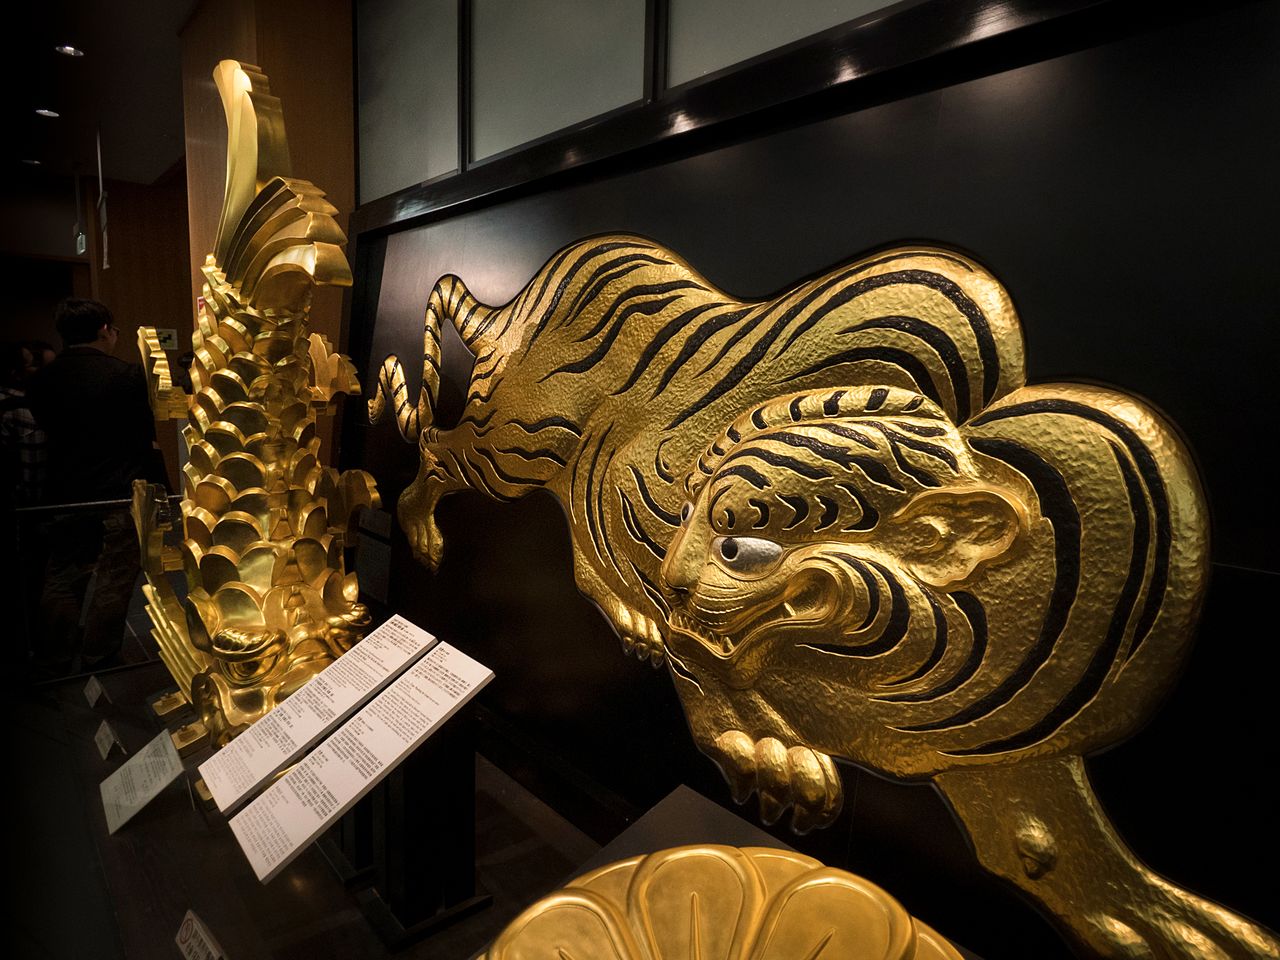 Une réplique des ornements du toit, shachihoko et un tigre dorés, exposés au premier étage.